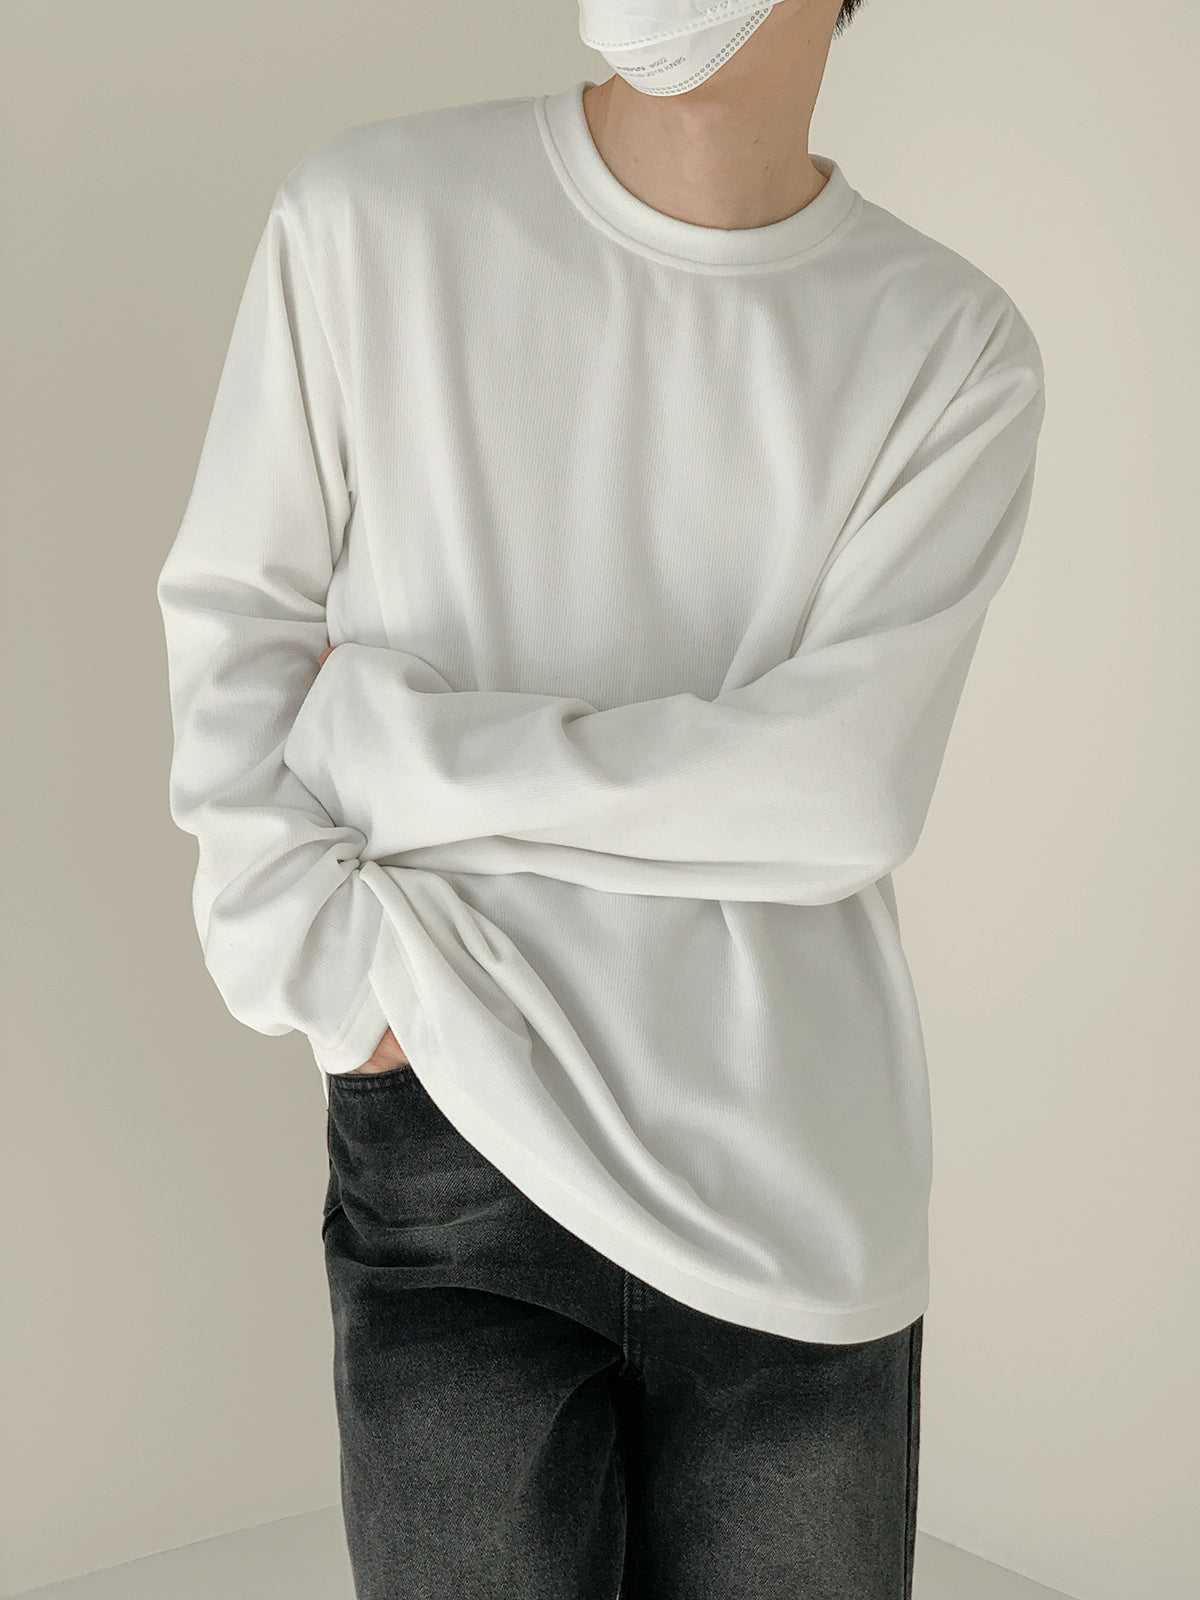 Zhou Drapey Fit Longsleeve T-Shirt-korean-fashion-T-Shirt-Zhou's Closet-OH Garments